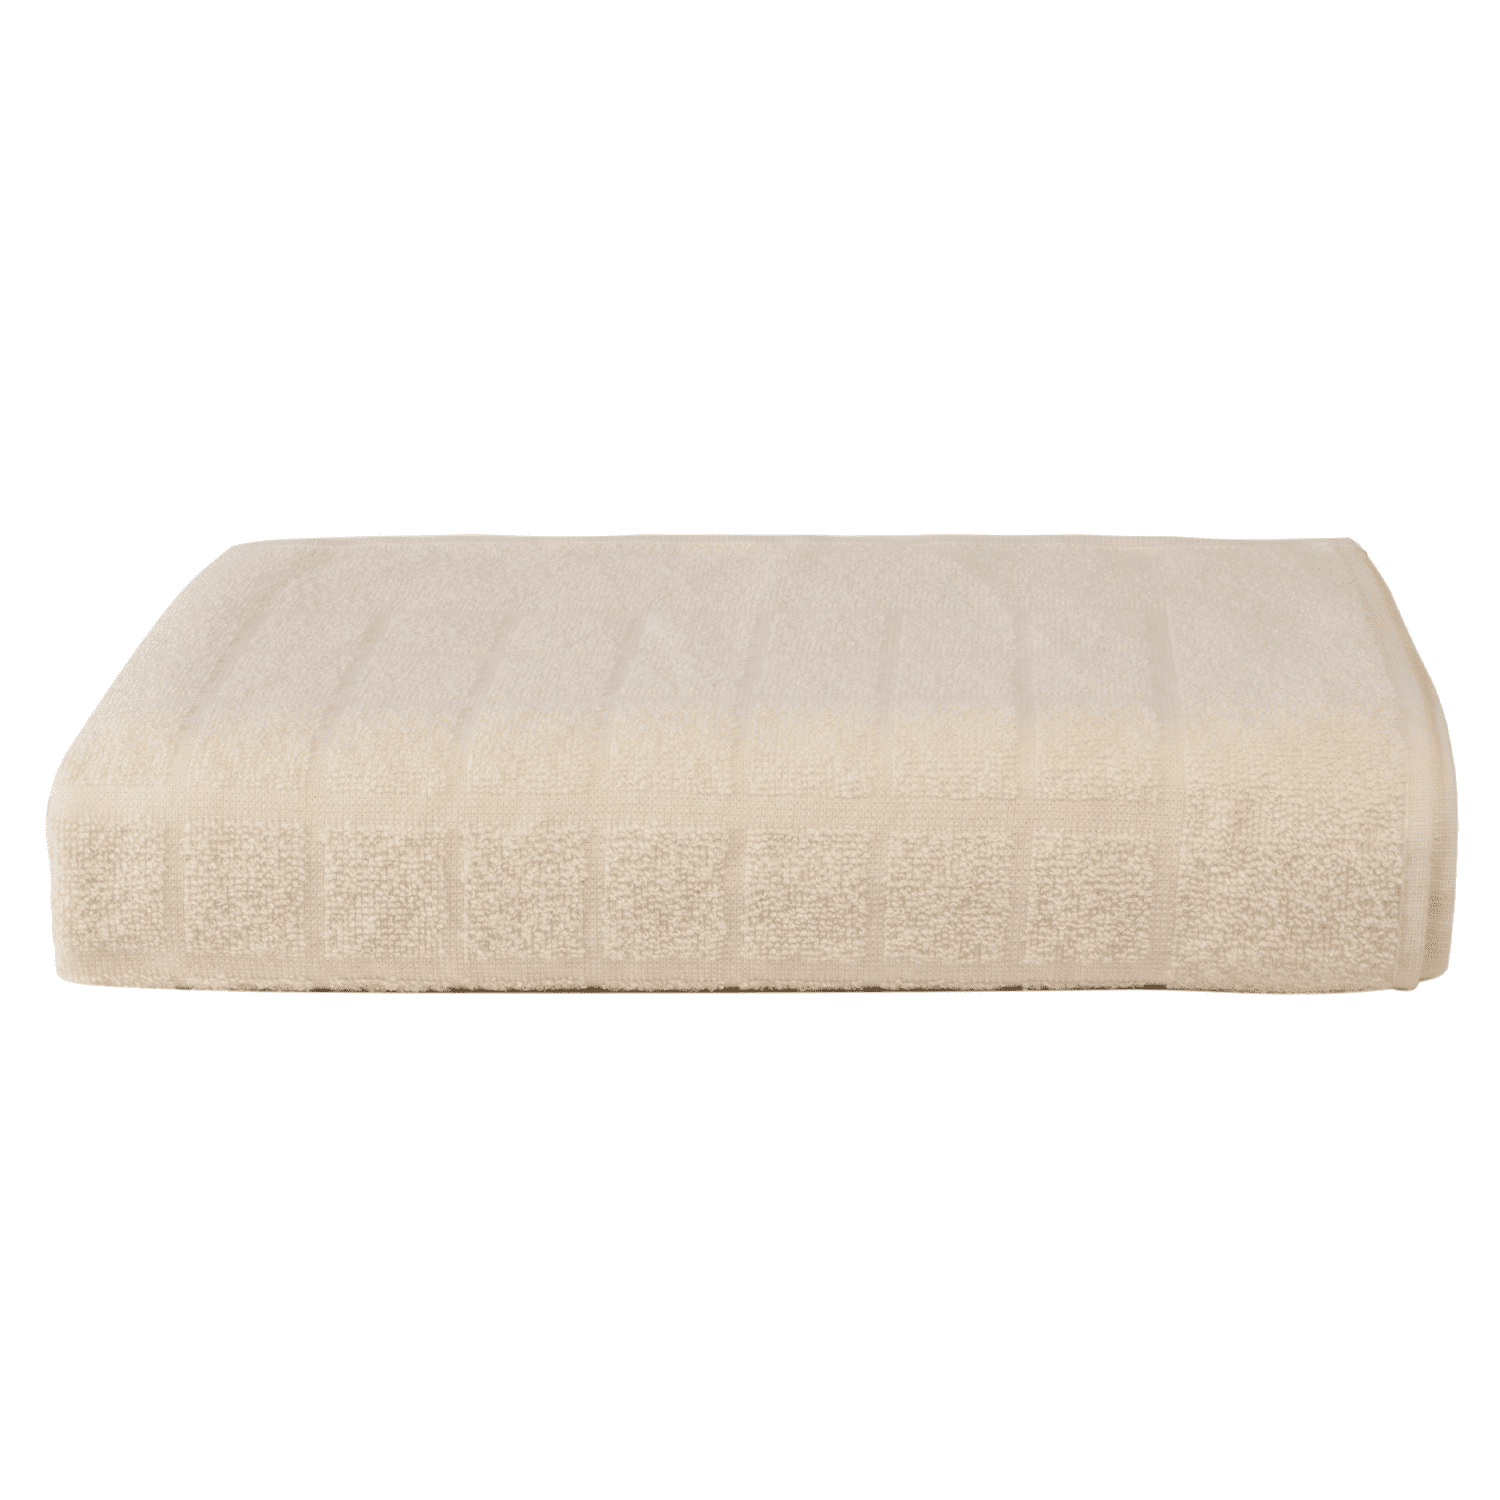 Toalha de Piso em Algodão Premium 75 x 48 cm - Off White